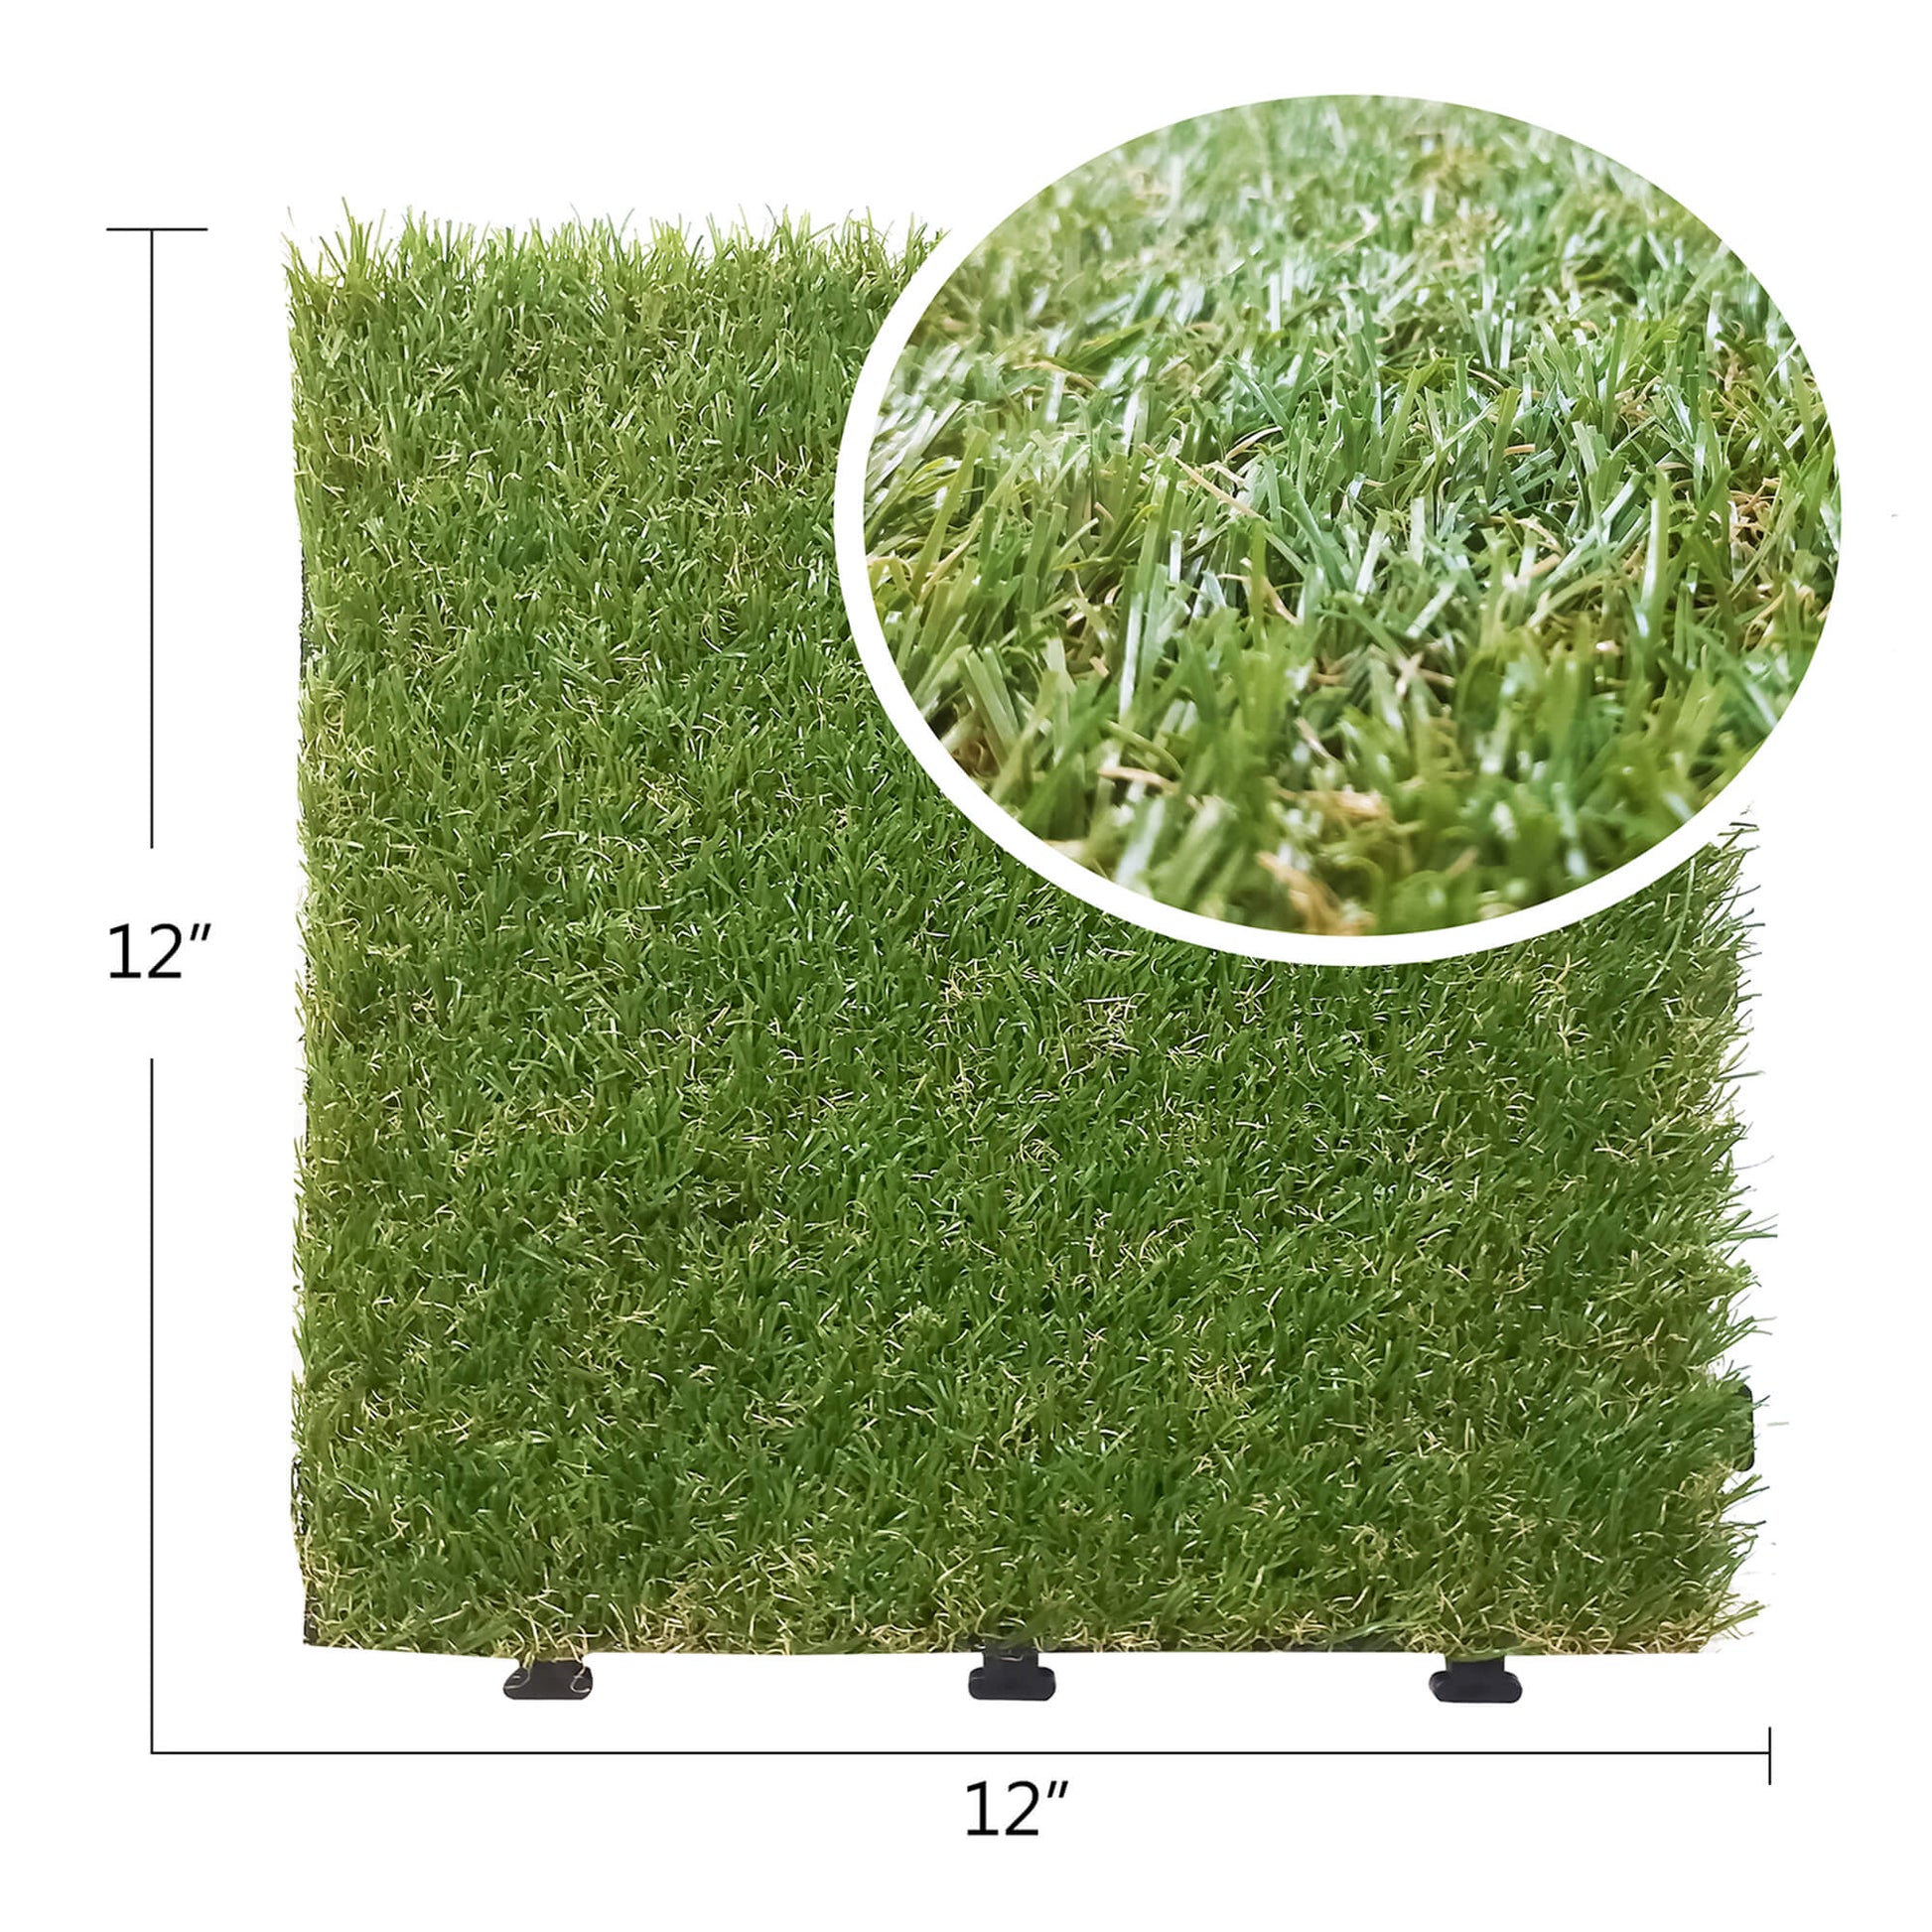 Artificial Grass Turf Tile / Interlocking Self-draining Mat / Grass Flooring / Lawn Floor Mat(8pcs)